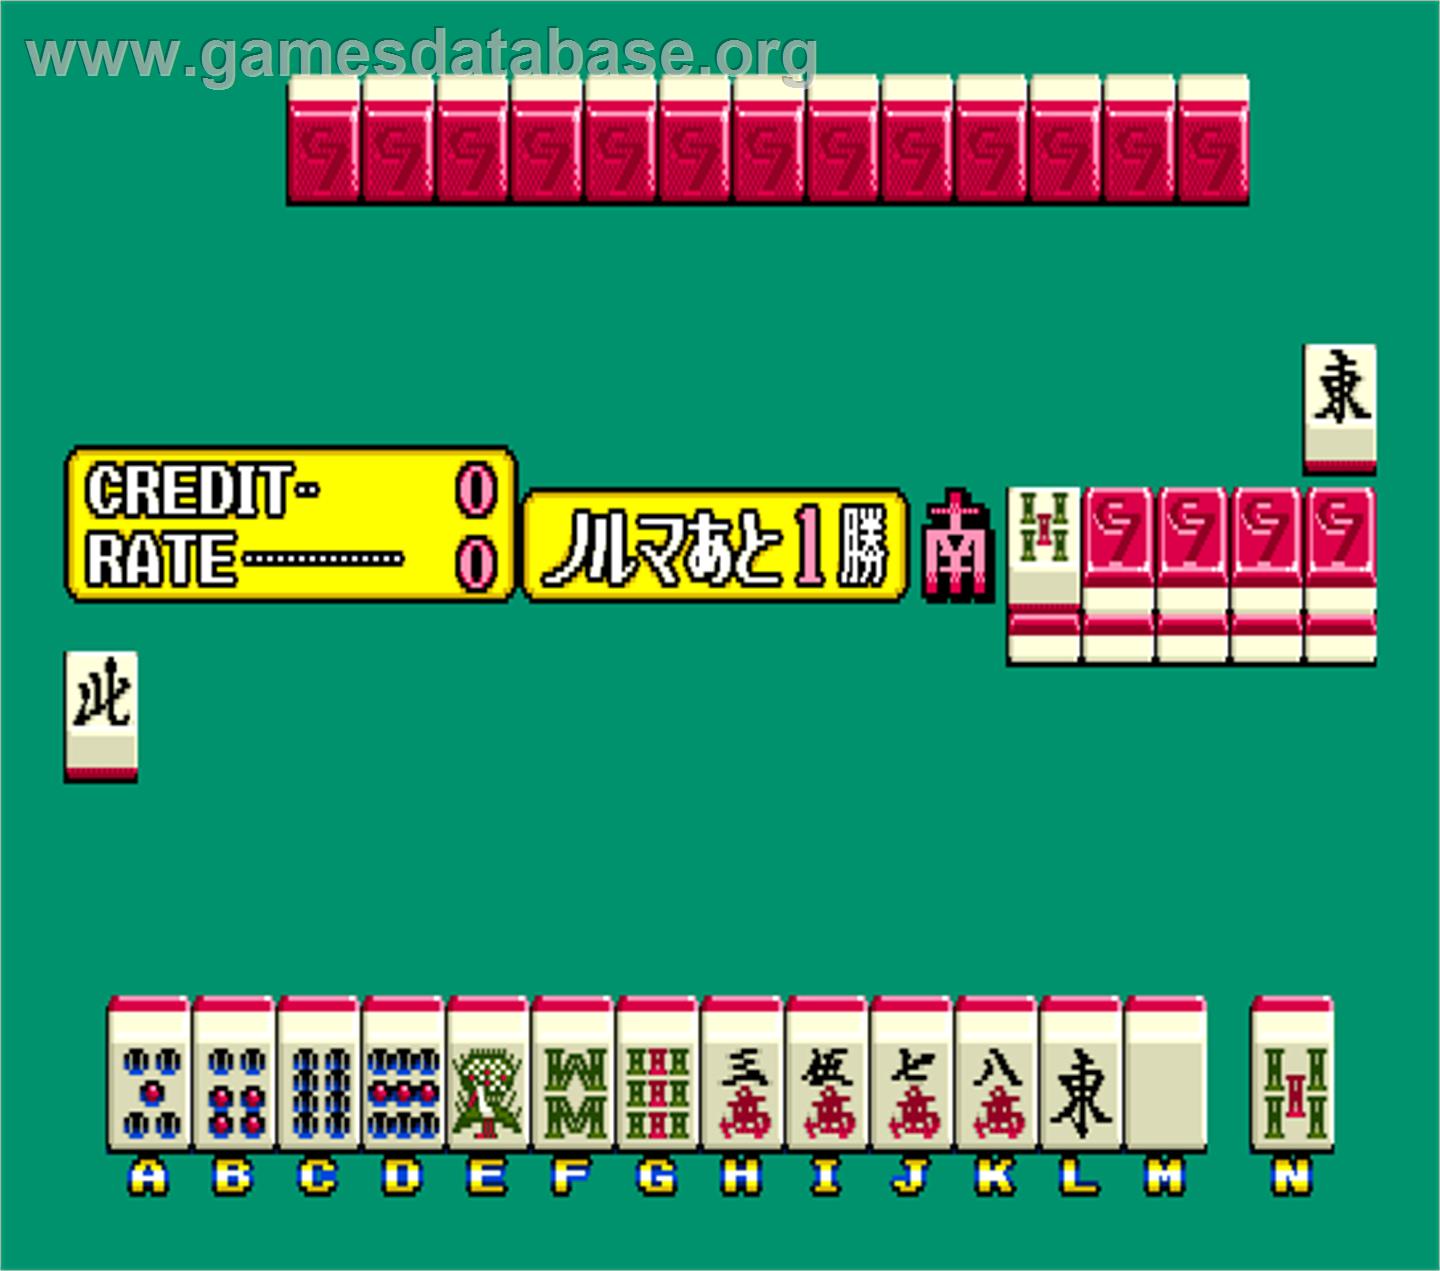 Cospure Tengoku 7 - Super Co-gal Grandprix - Arcade - Artwork - In Game